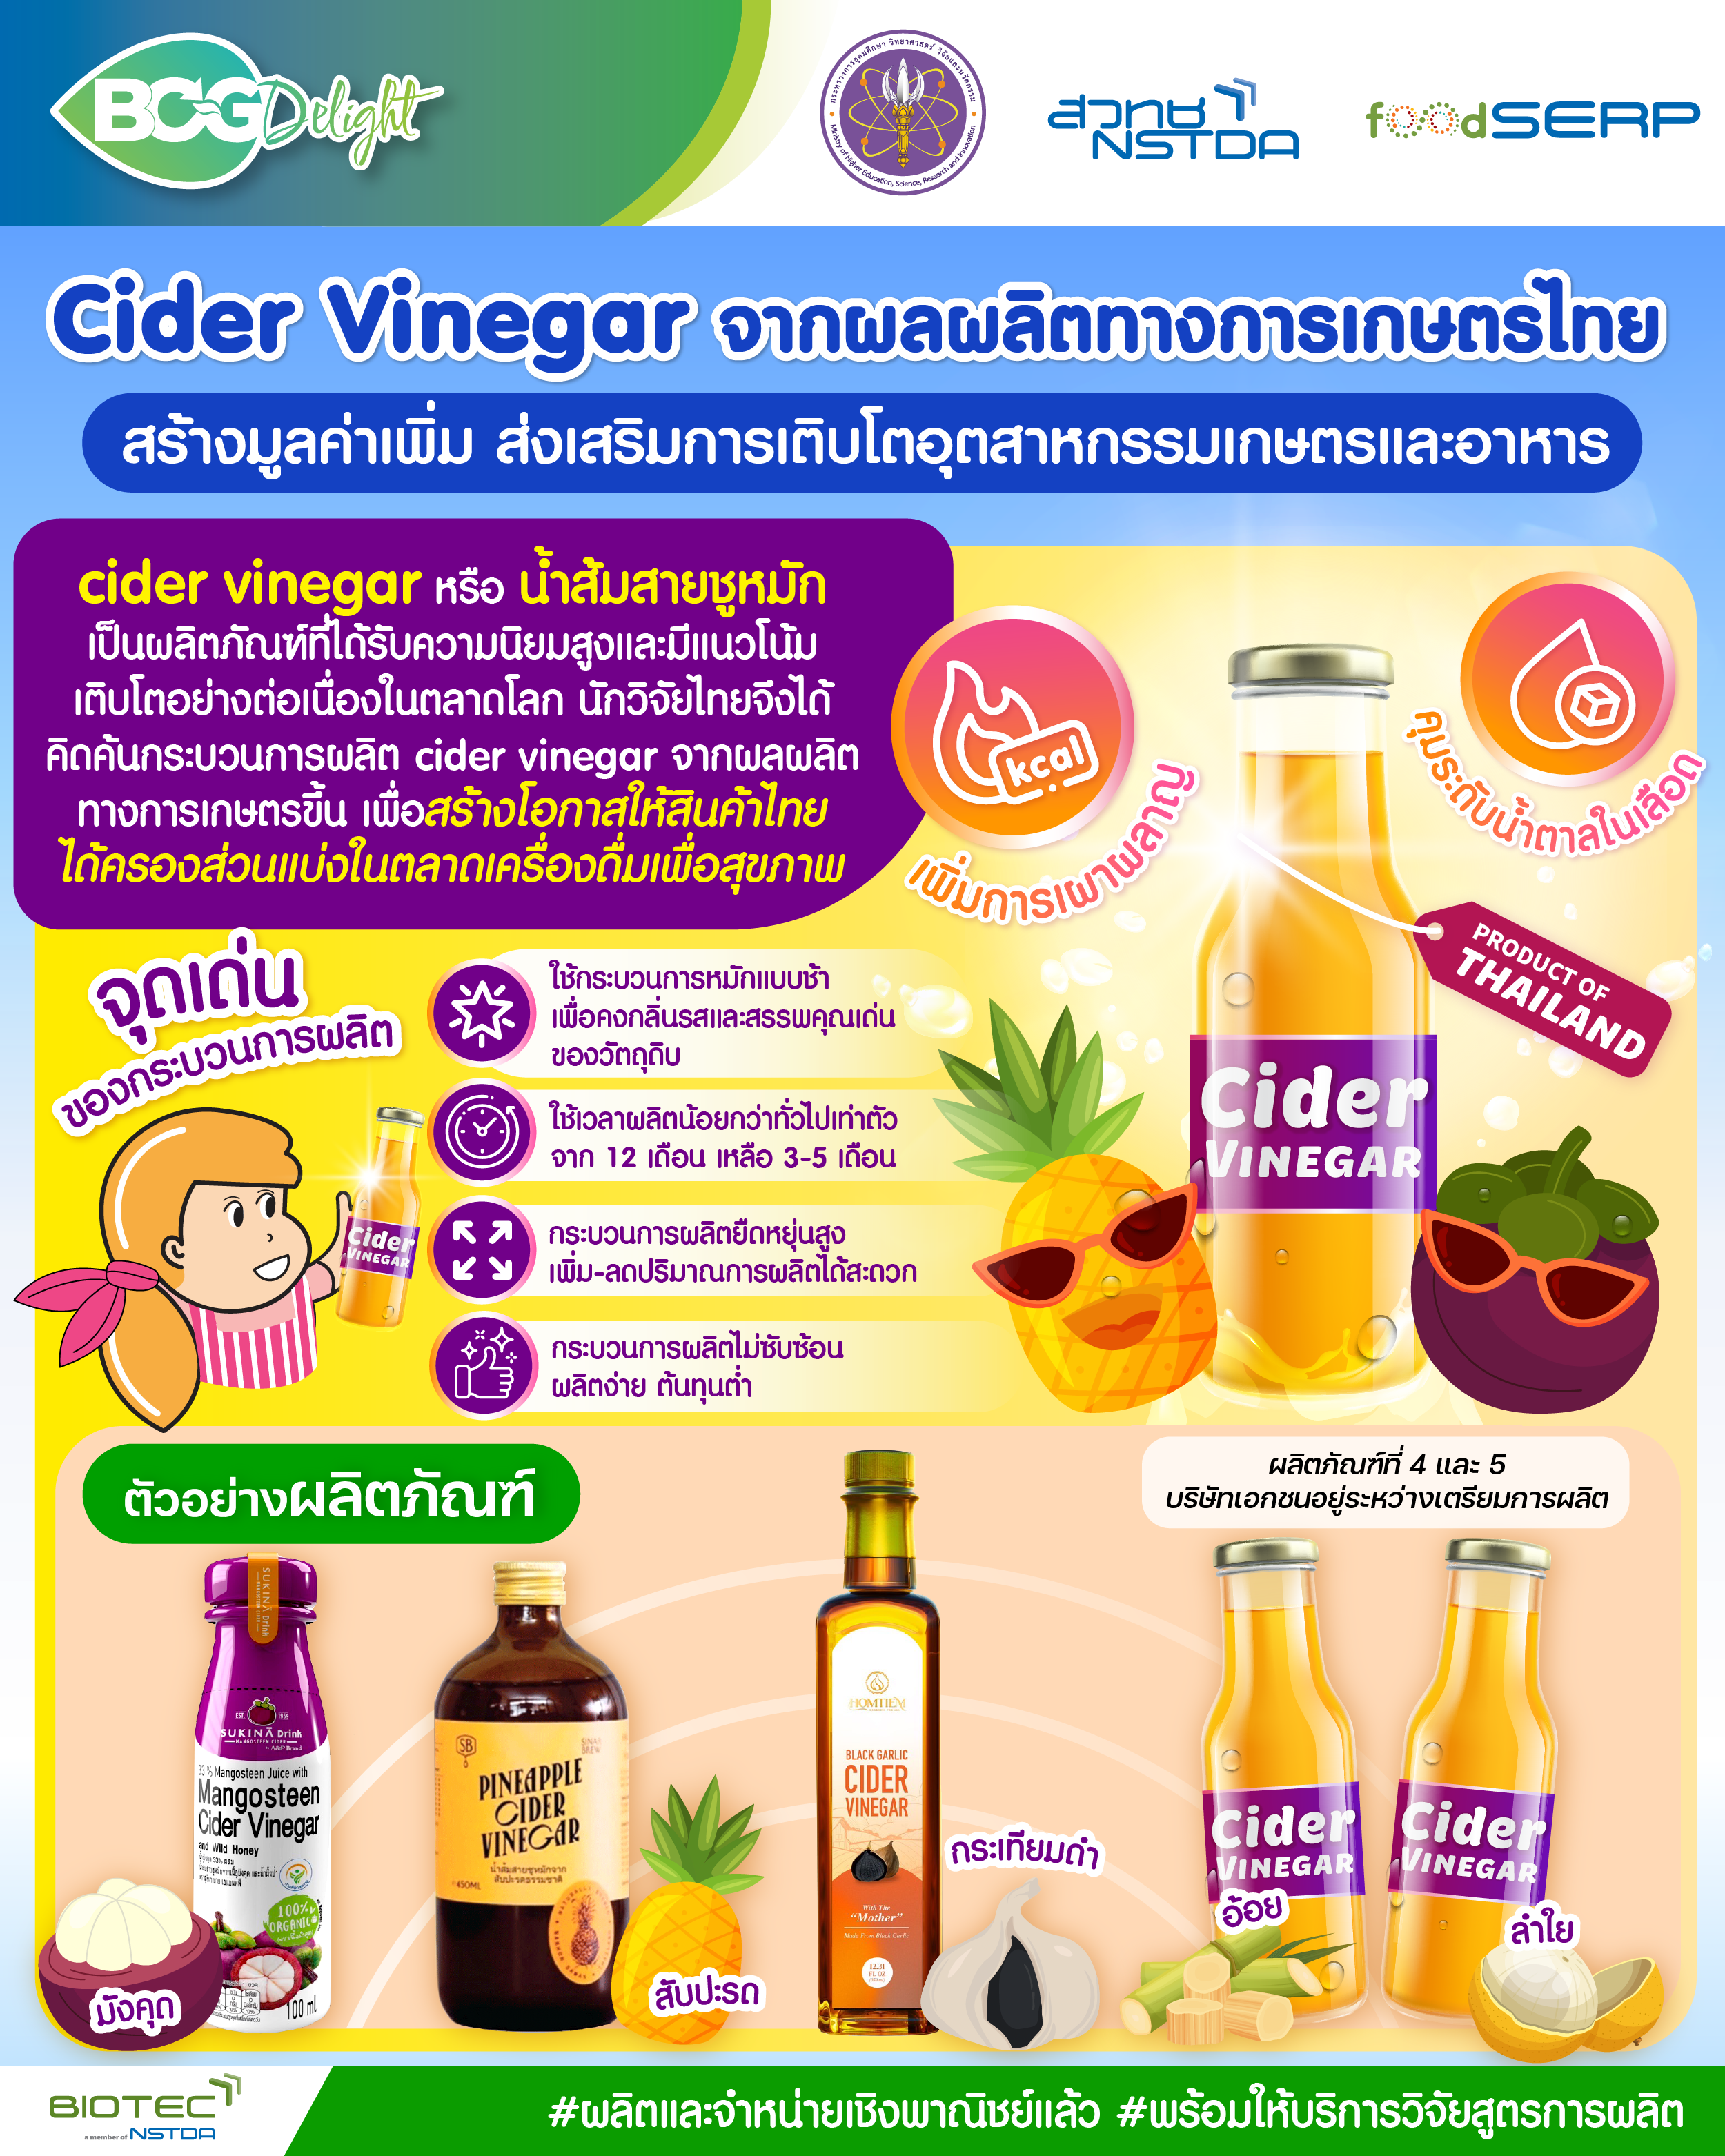 Cider Vinegar จากผลผลิตทางการเกษตรไทย